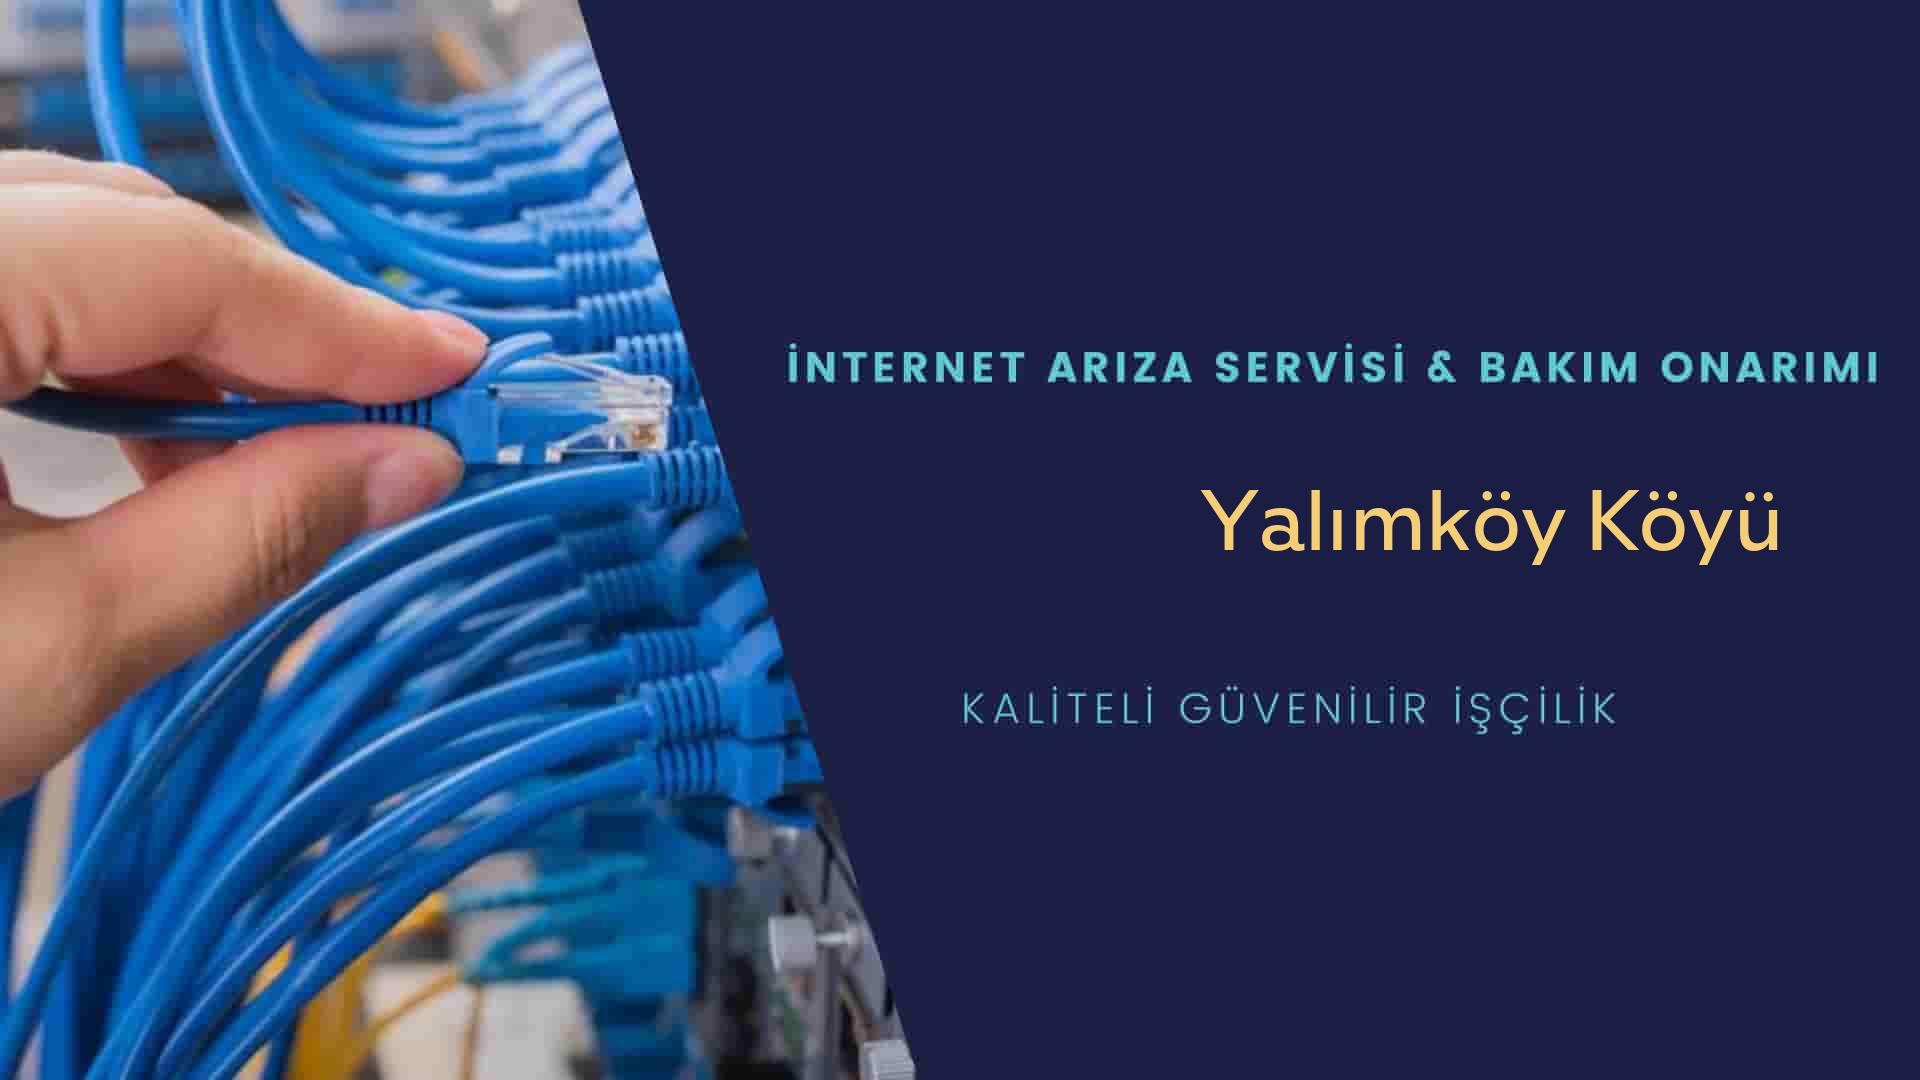 Yalımköy Köyü internet kablosu çekimi yapan yerler veya elektrikçiler mi? arıyorsunuz doğru yerdesiniz o zaman sizlere 7/24 yardımcı olacak profesyonel ustalarımız bir telefon kadar yakındır size.